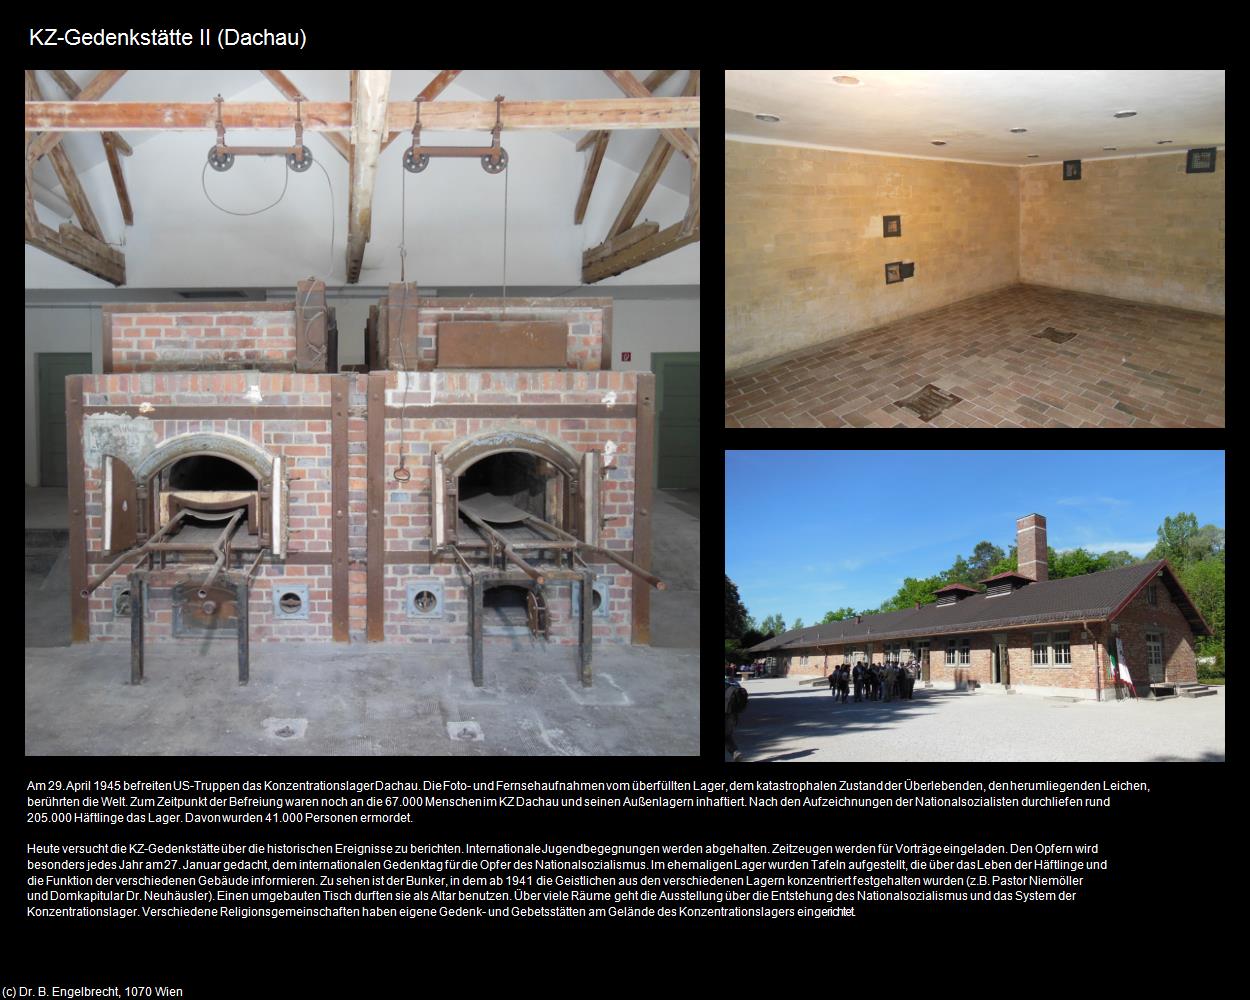 KZ-Gedenkstätte II (Dachau) in Kulturatlas-BAYERN